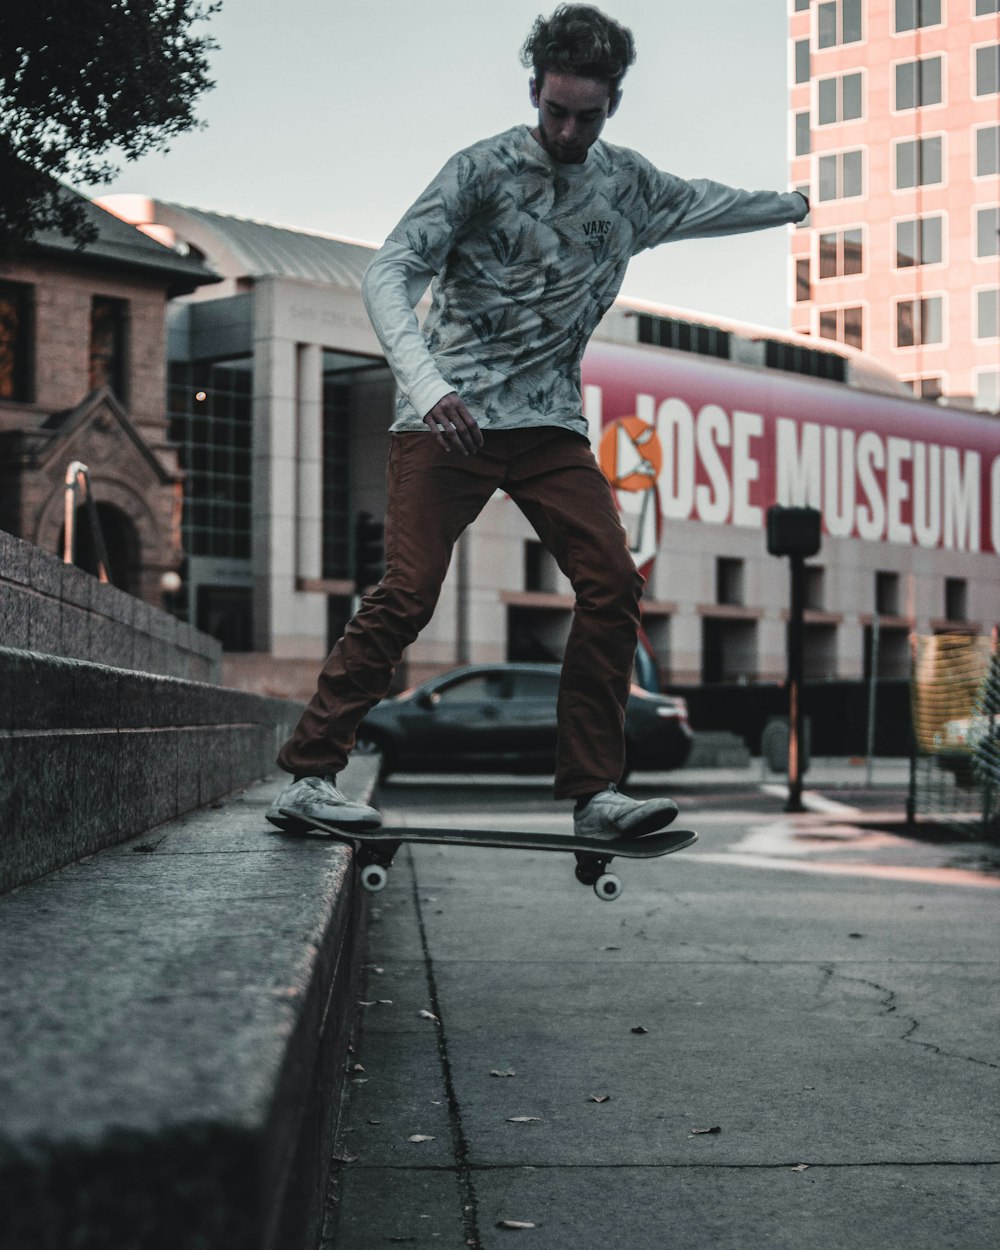 Mann spielt Skateboard auf Treppe